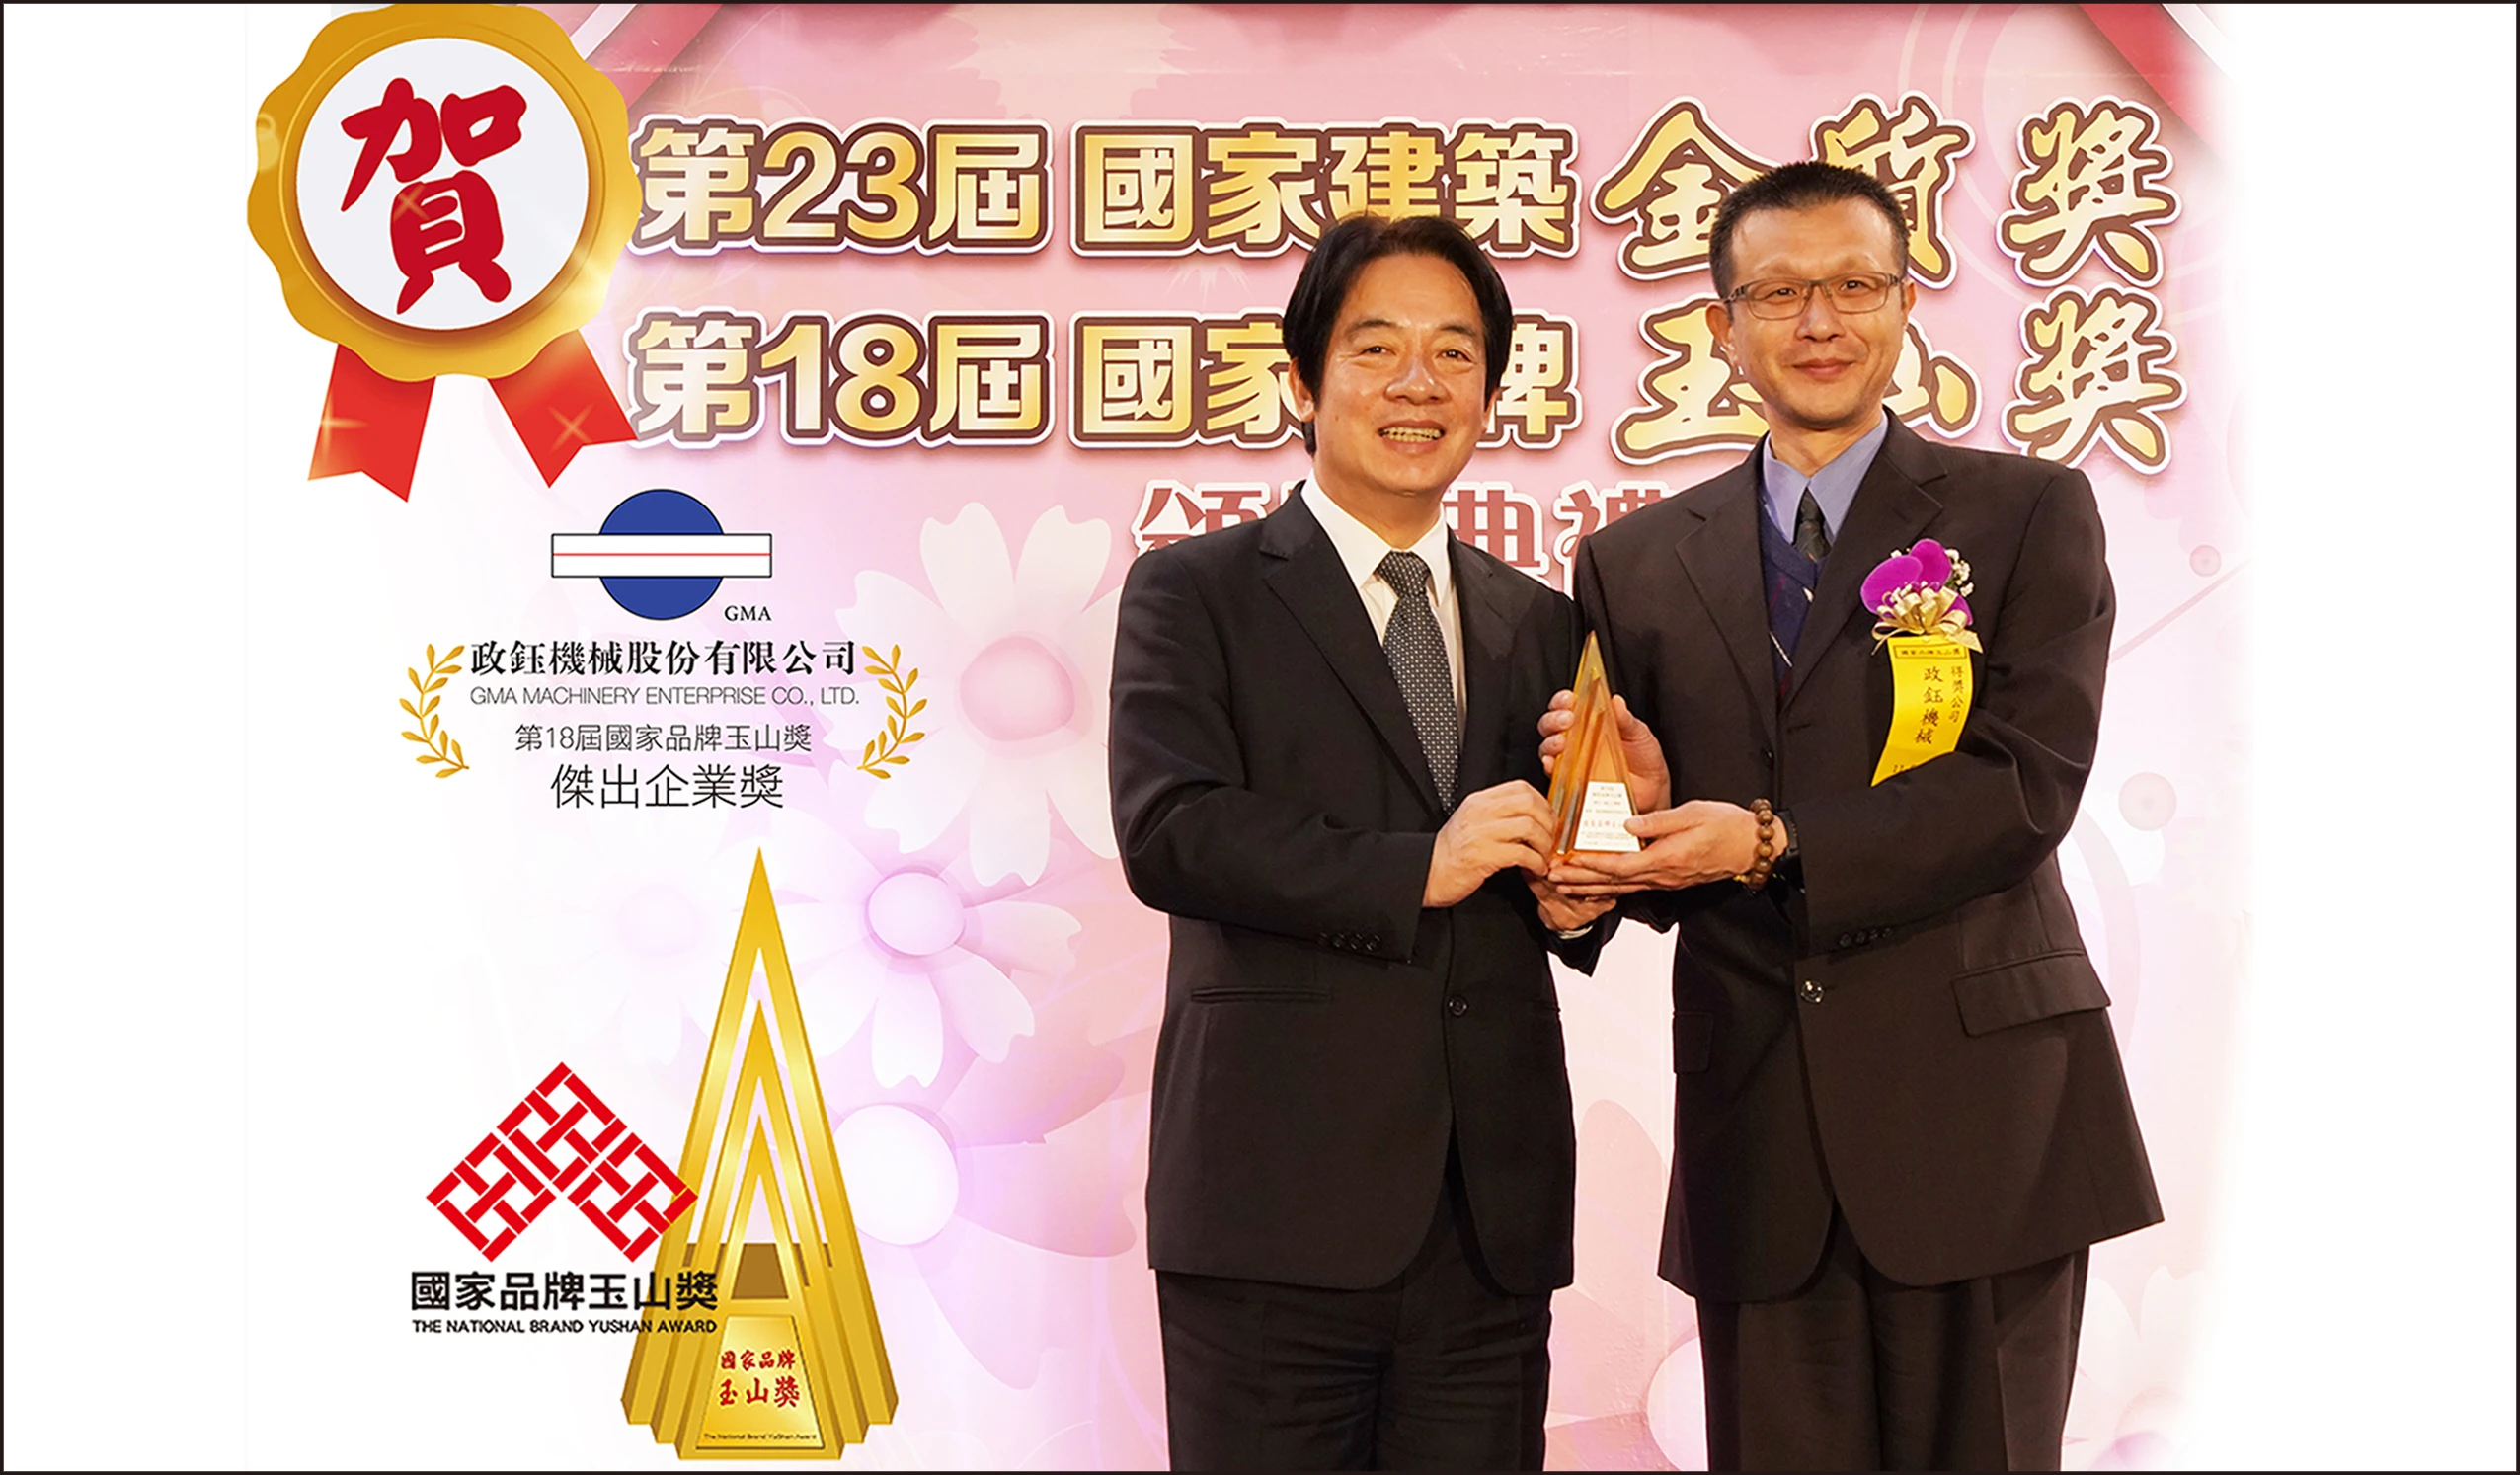 2021年10月21日に「ナショナルブランド玉山賞（National Brand YuShan Awrad）」表彰式が盛大に行われました。